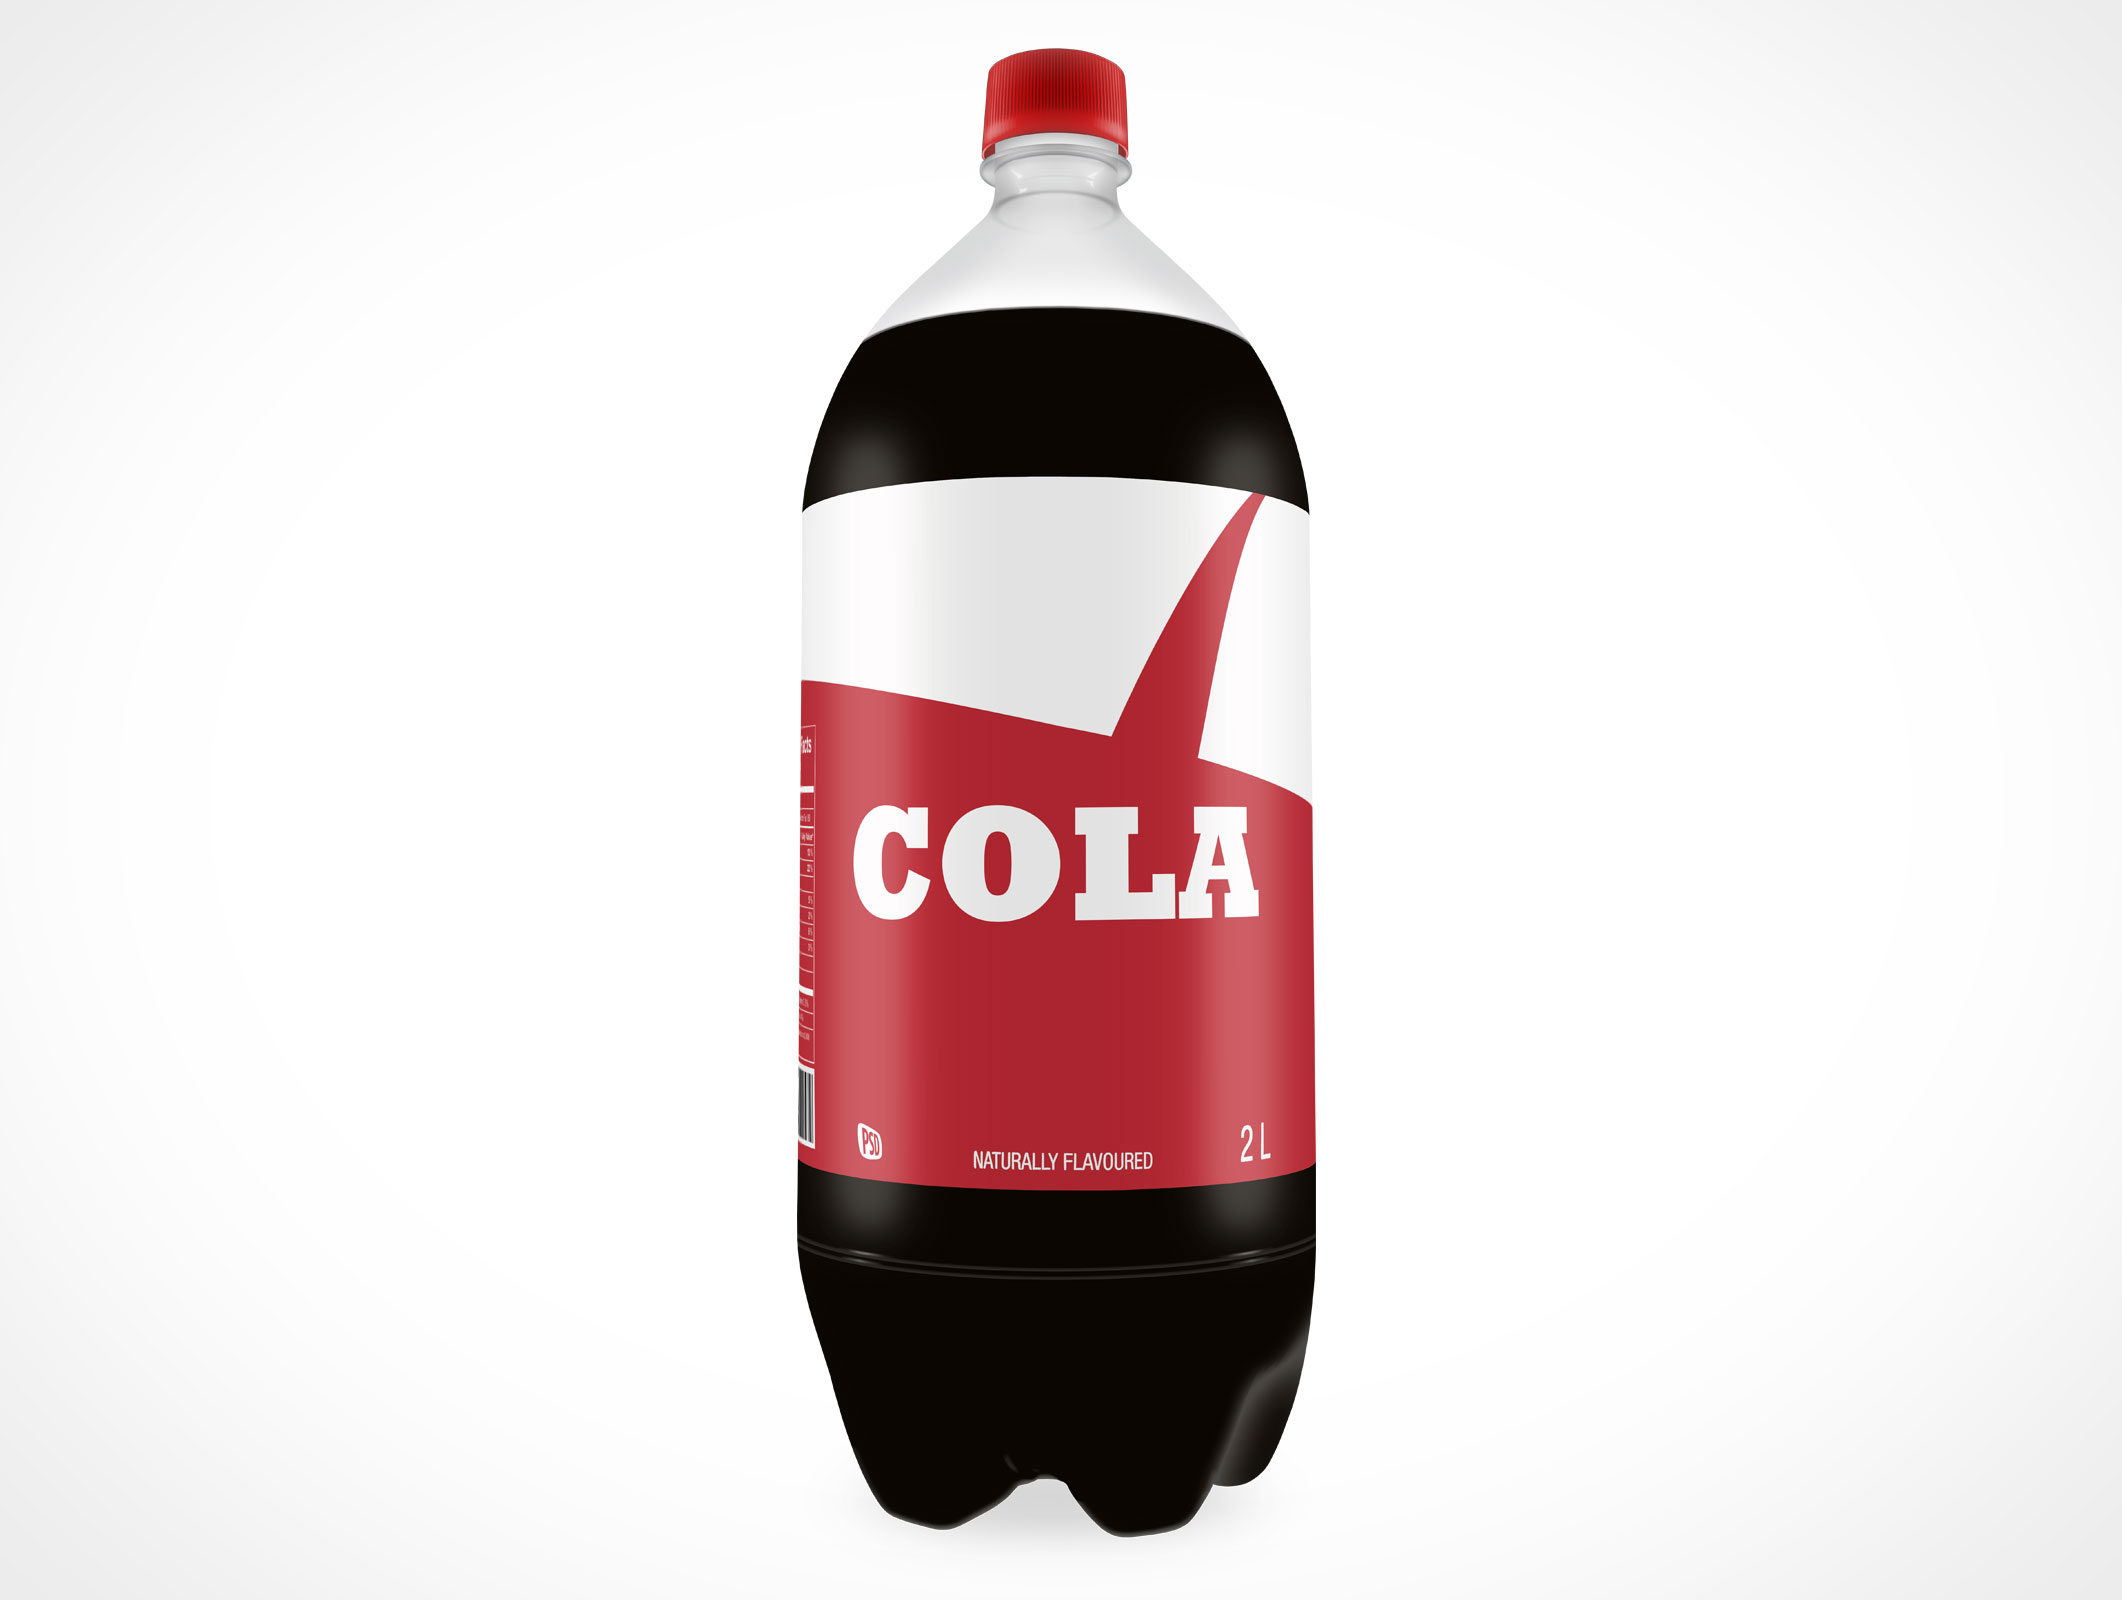 Soda-bottle